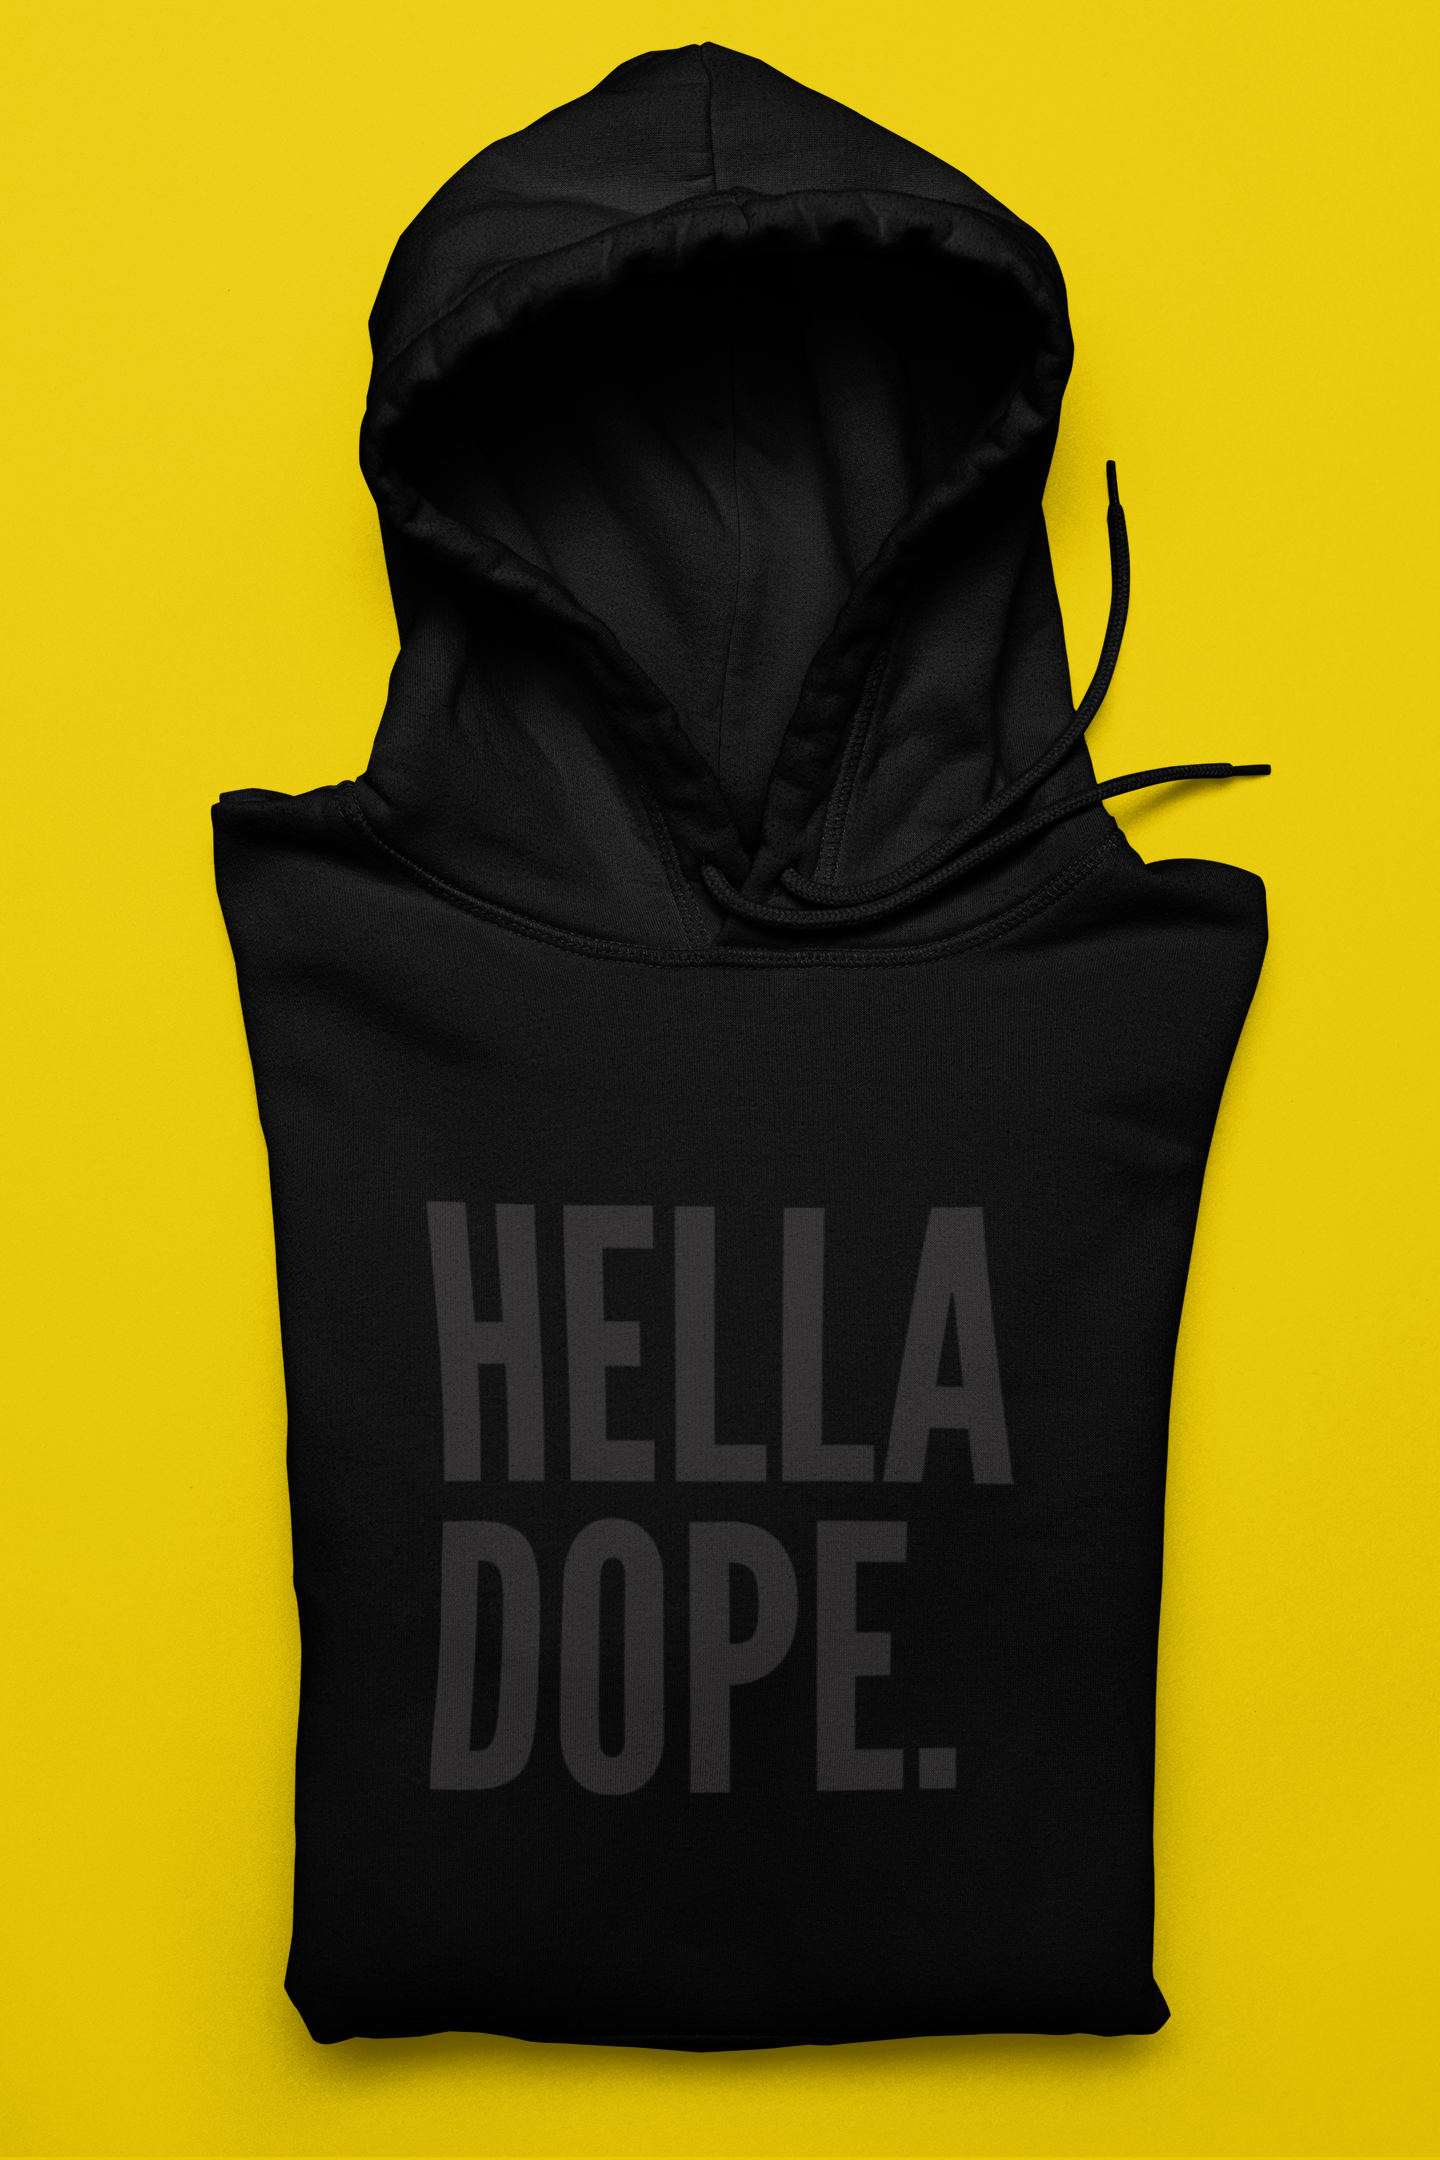 Hella Dope/Black Print Hoodie